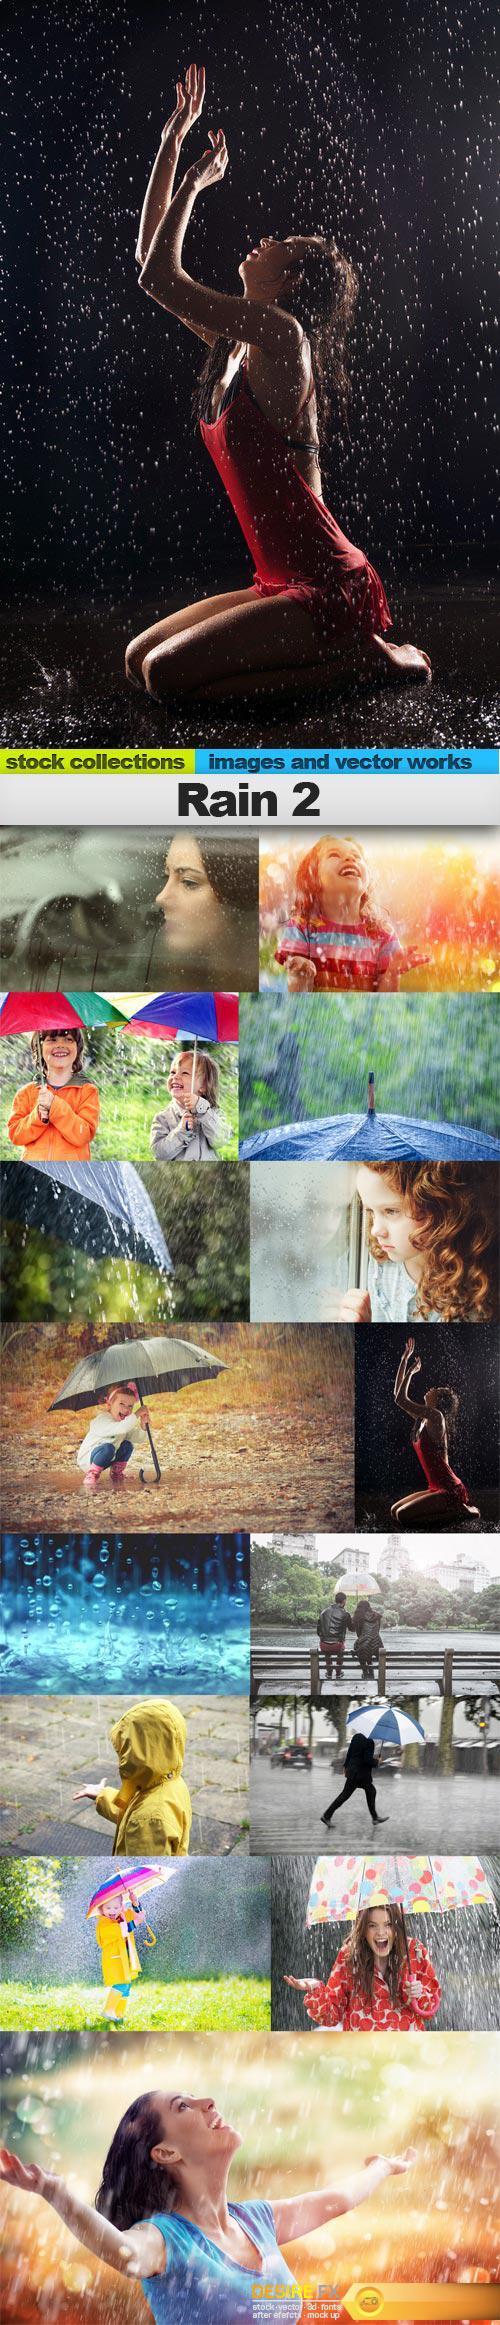 Rain 2, 15 x UHQ JPEG